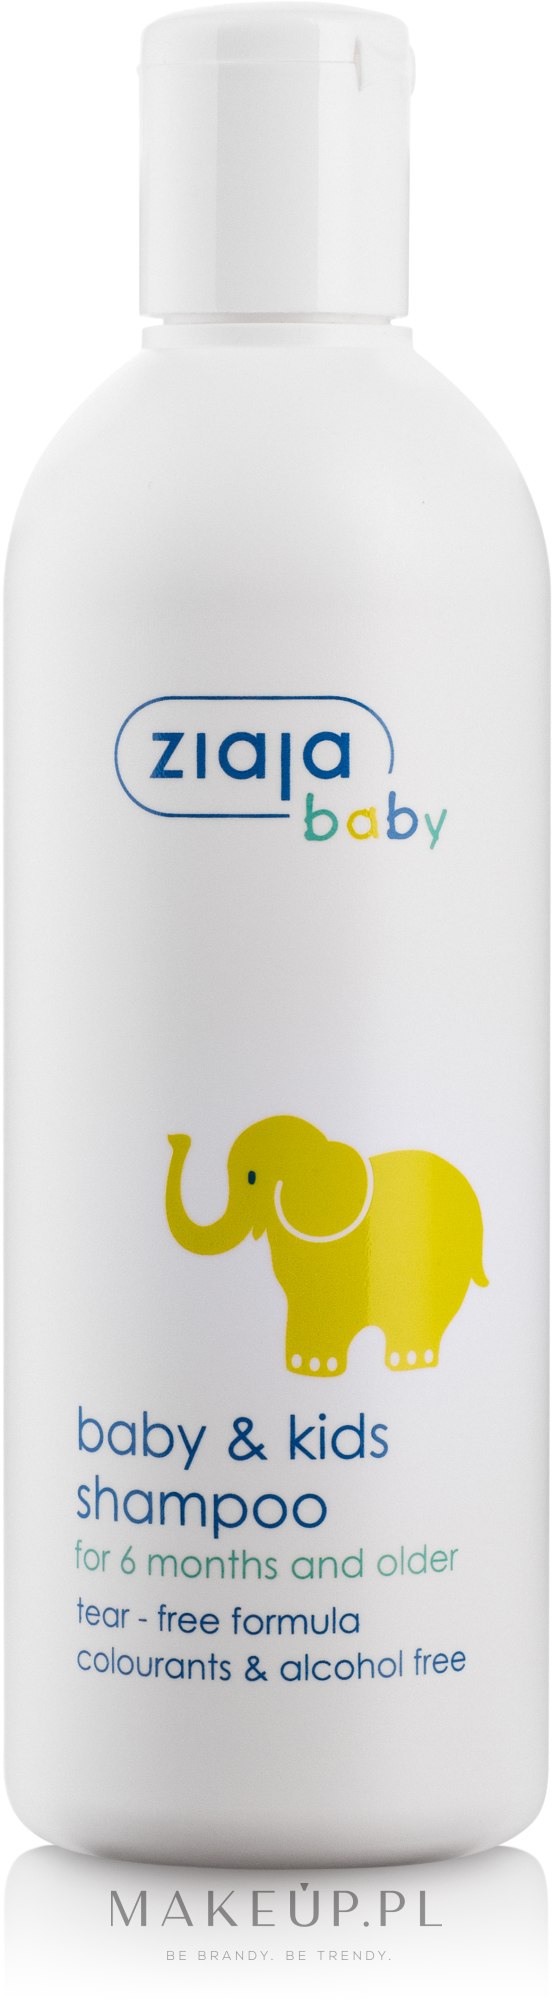 ziajka szampon dla dzieci i niemowląt ulotka